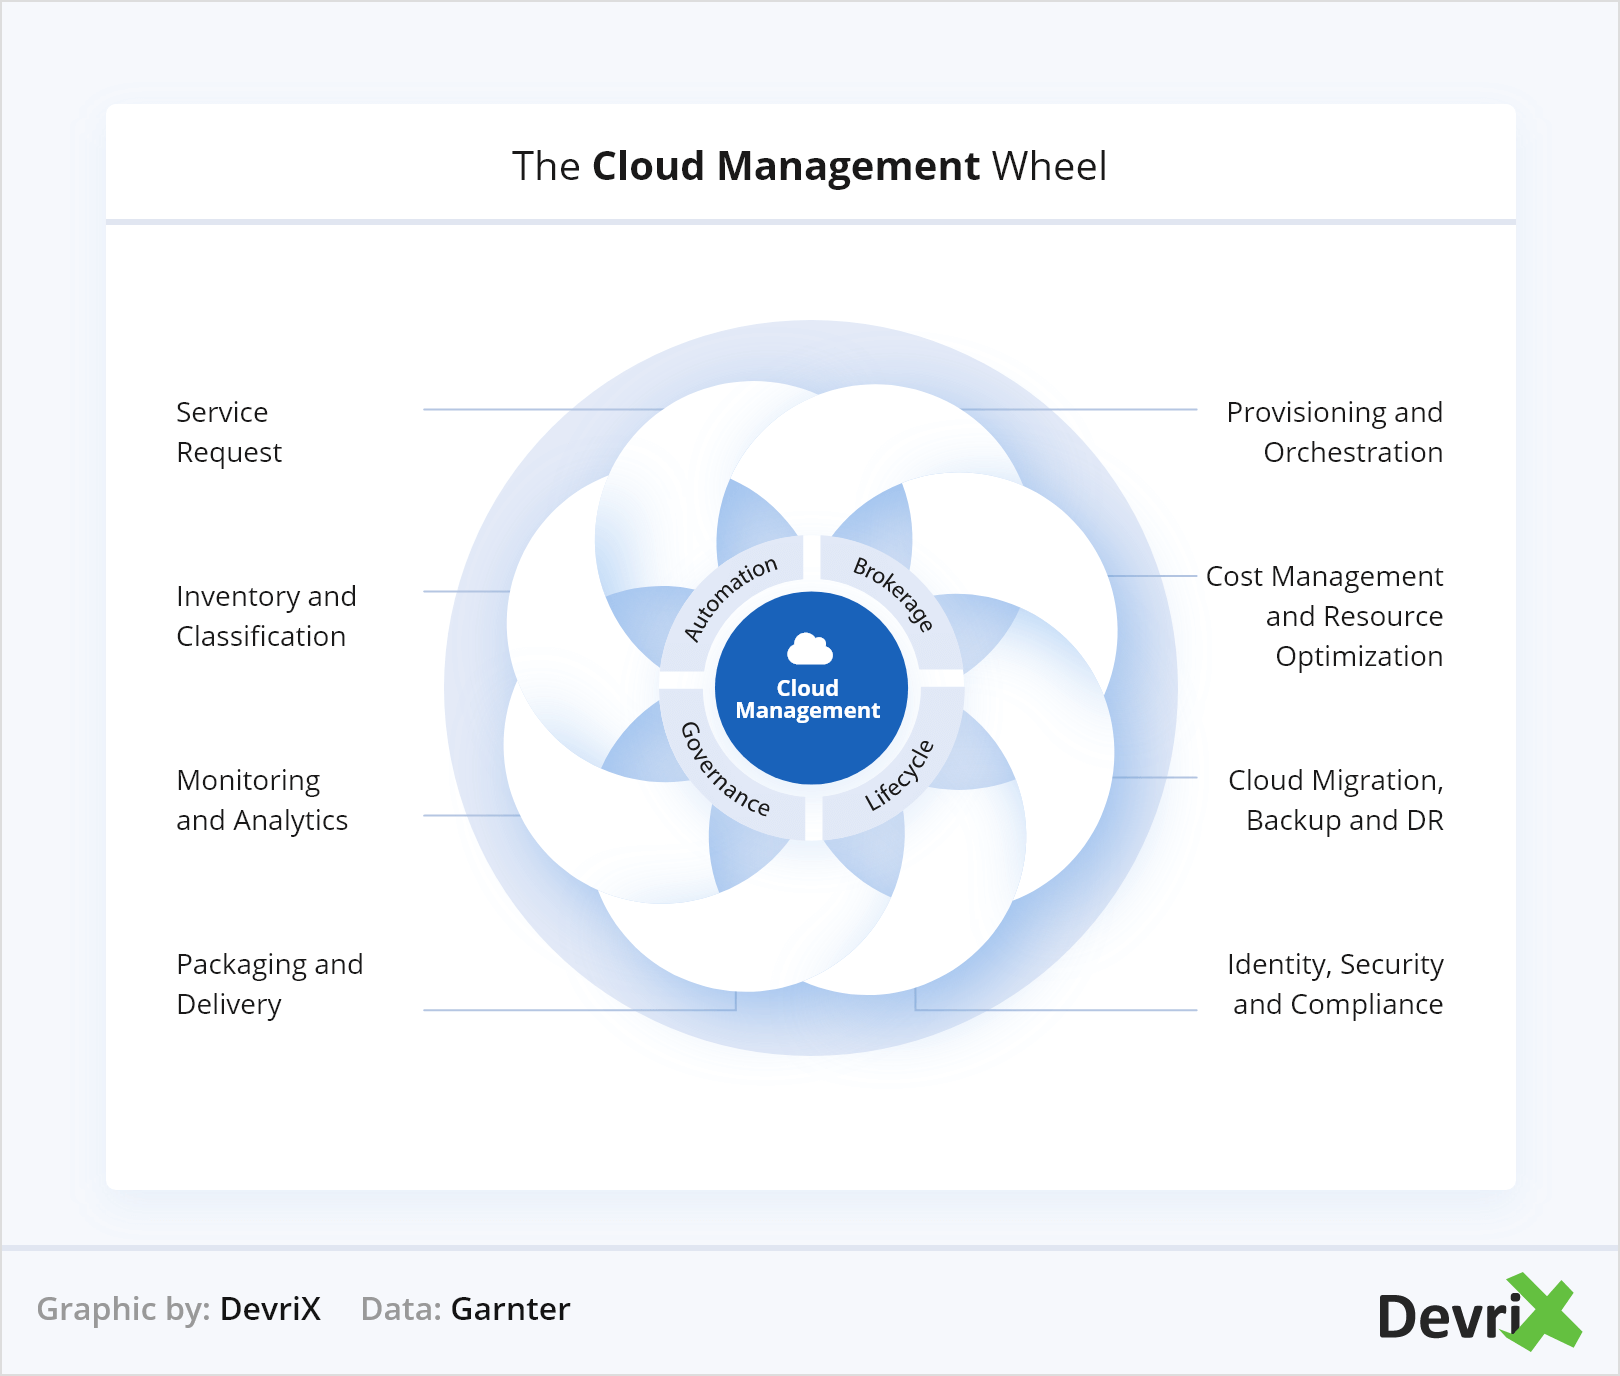 The Cloud Management Wheel